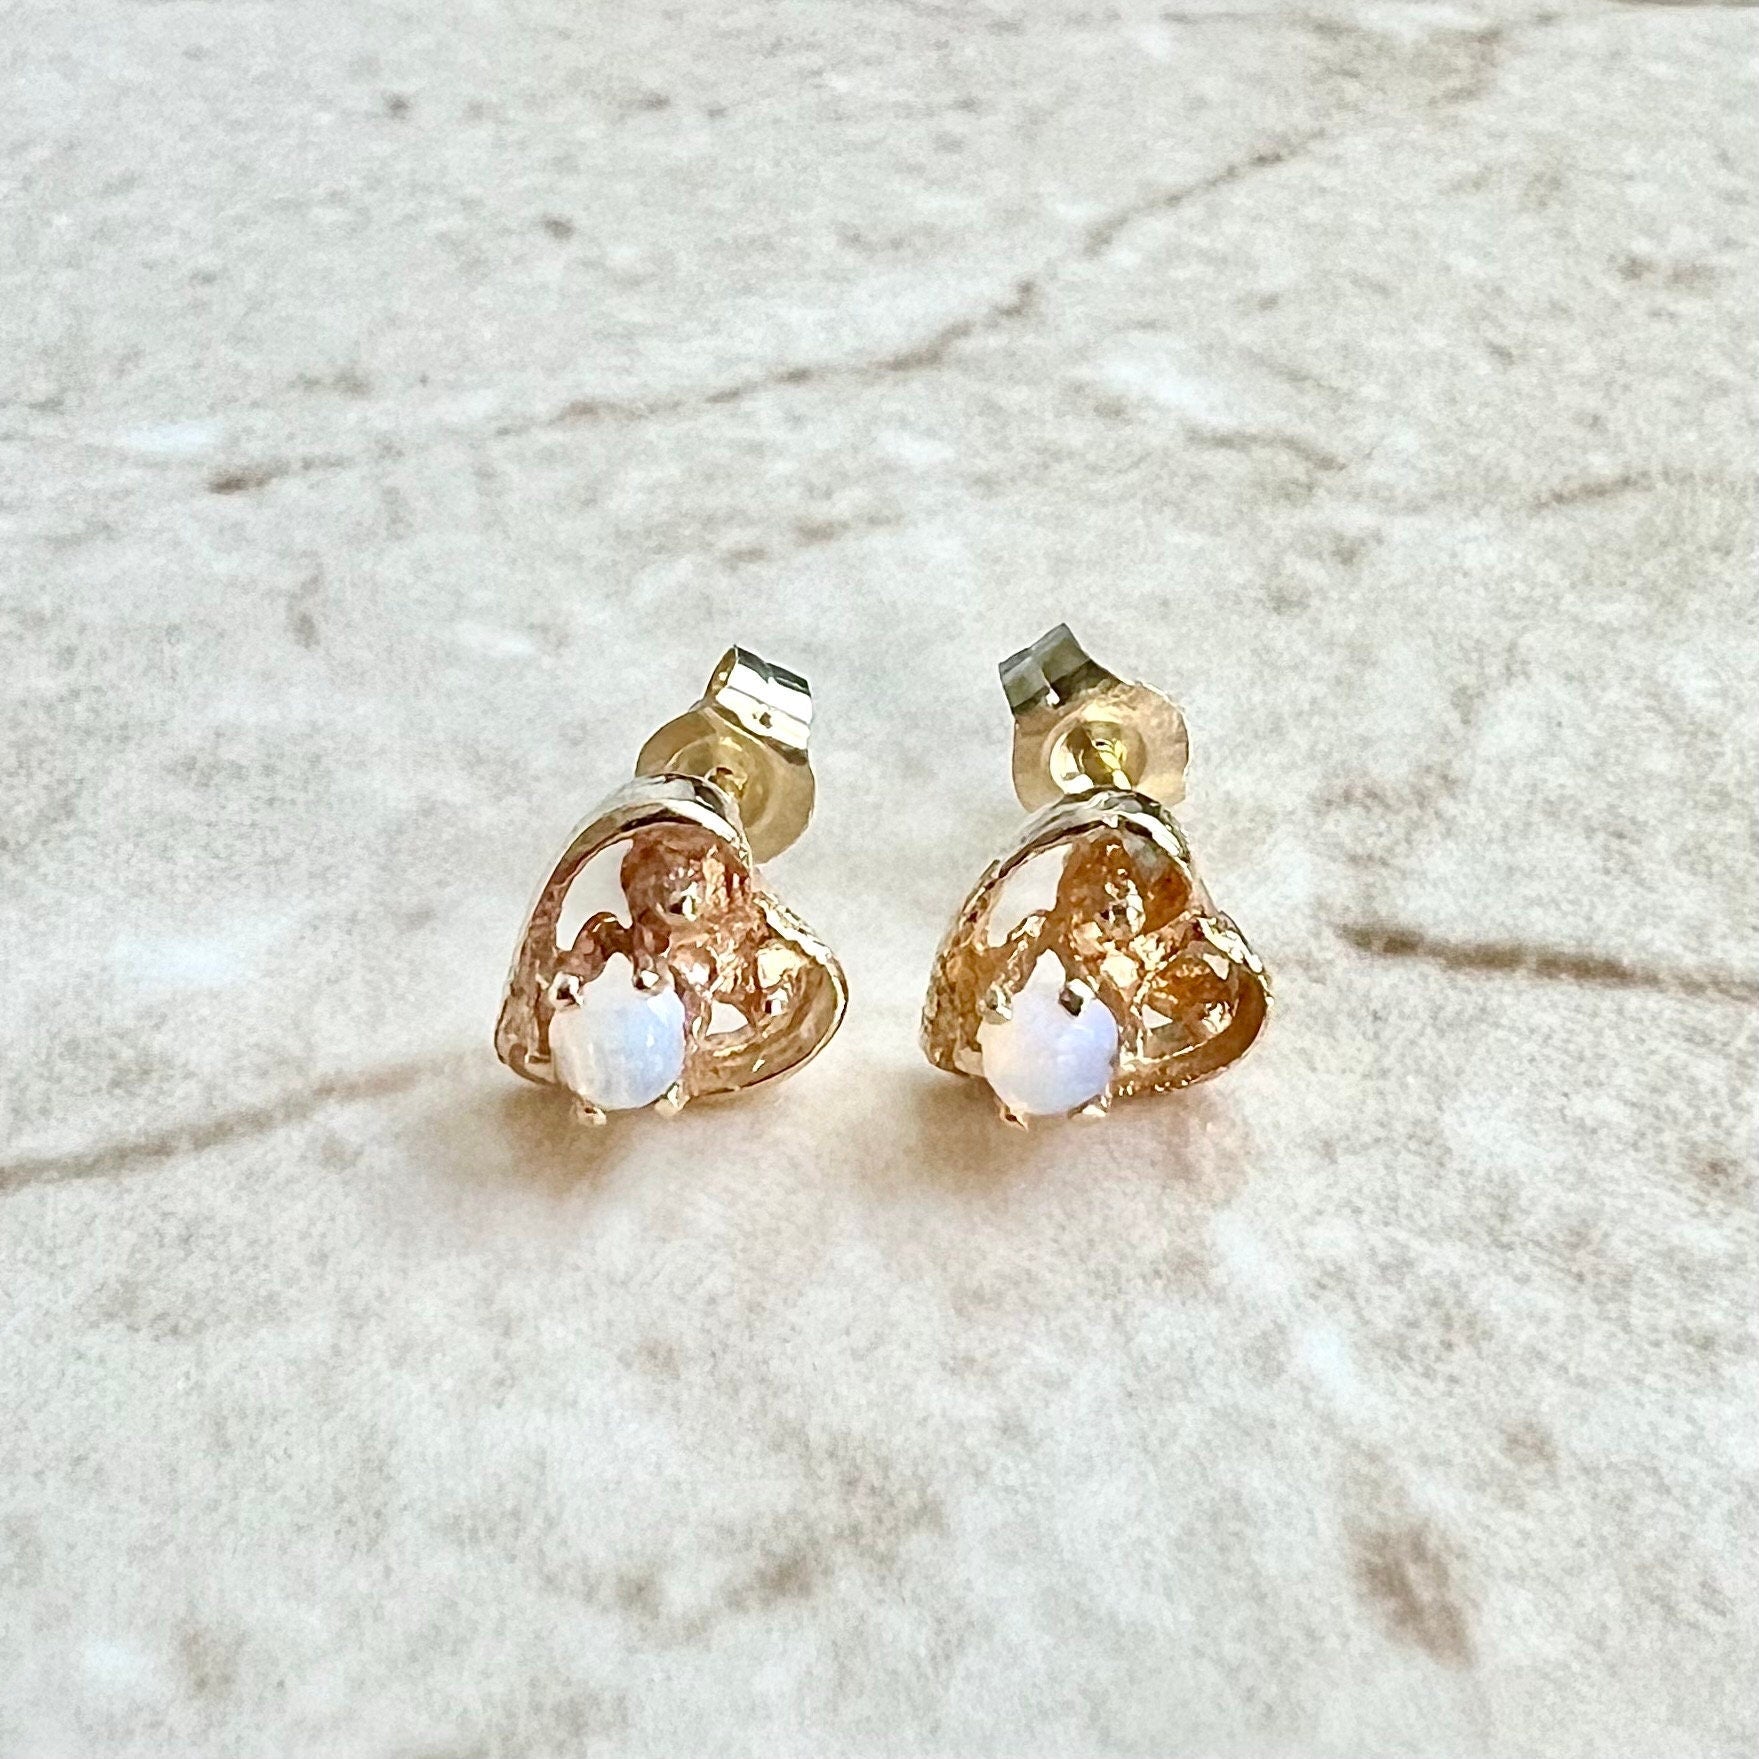 10K Opal Stud Earrings - Yellow Gold Opal Earrings - Opal Jewelry - Opal Heart Earrings - October Birthstone Earrings - Best Gifts For Her